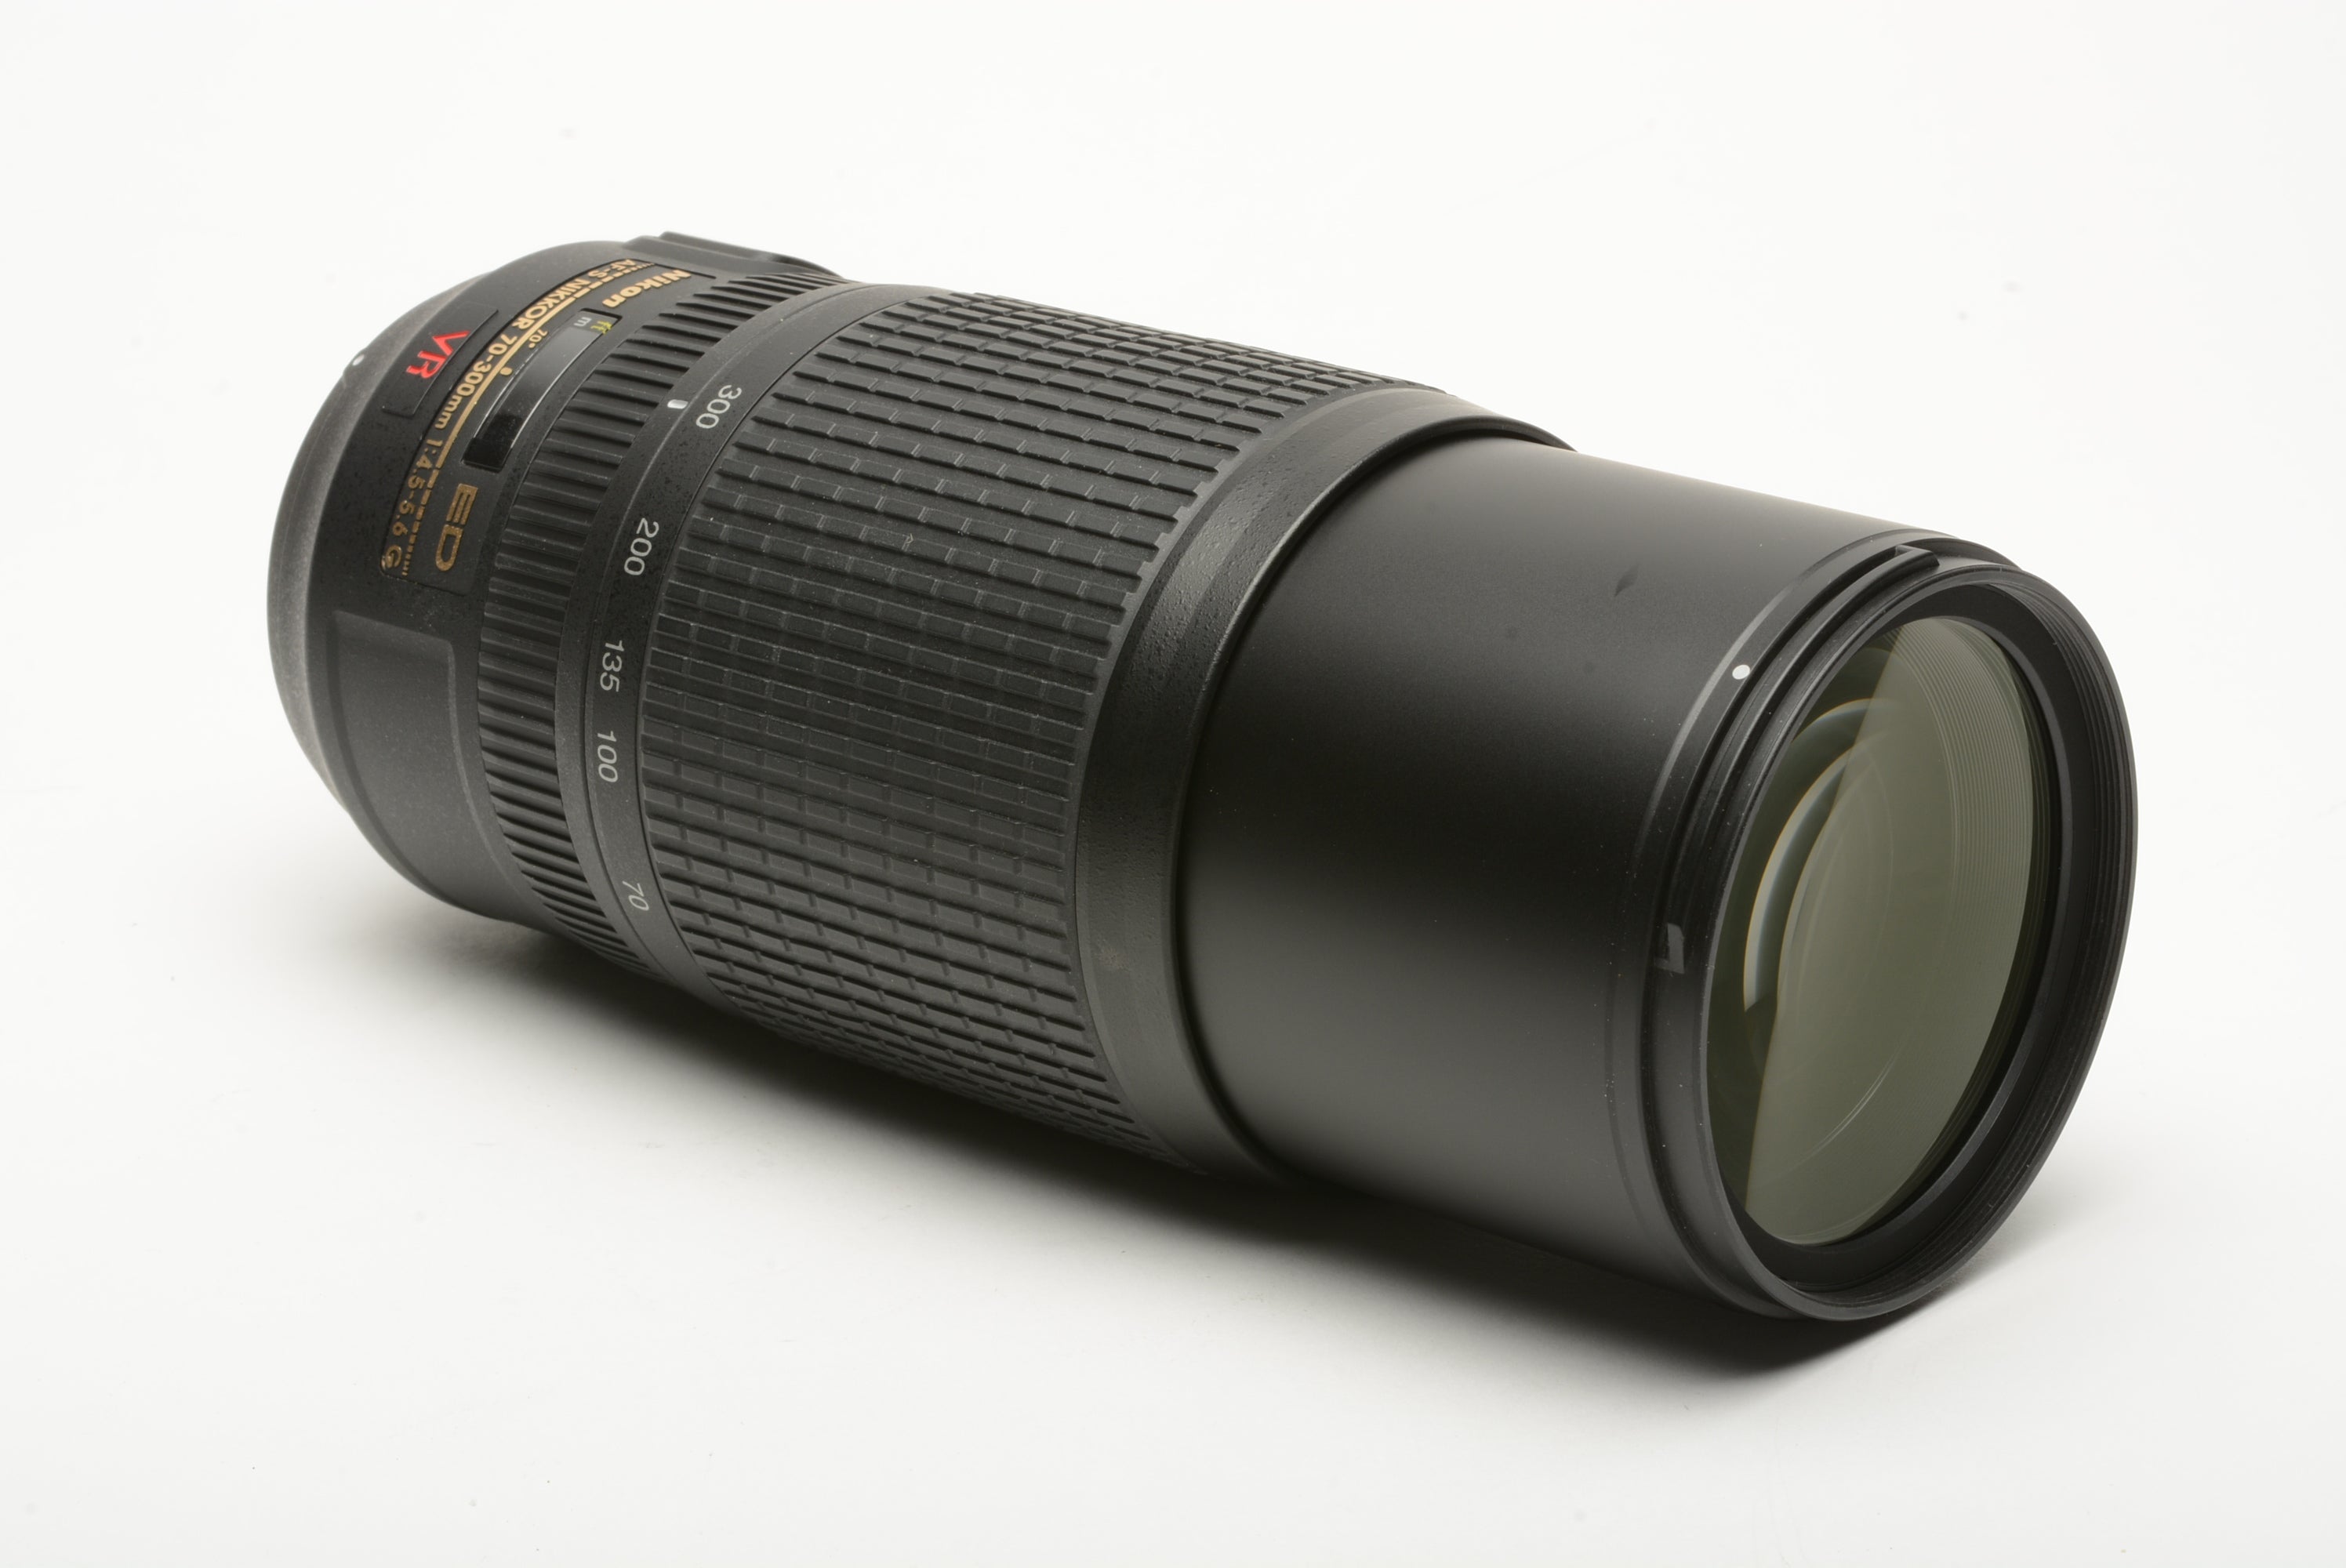 Nikon AF-S Nikkor 70-300mm f4.5-5.6 G ED VR Lens w/Hood, Caps, USA